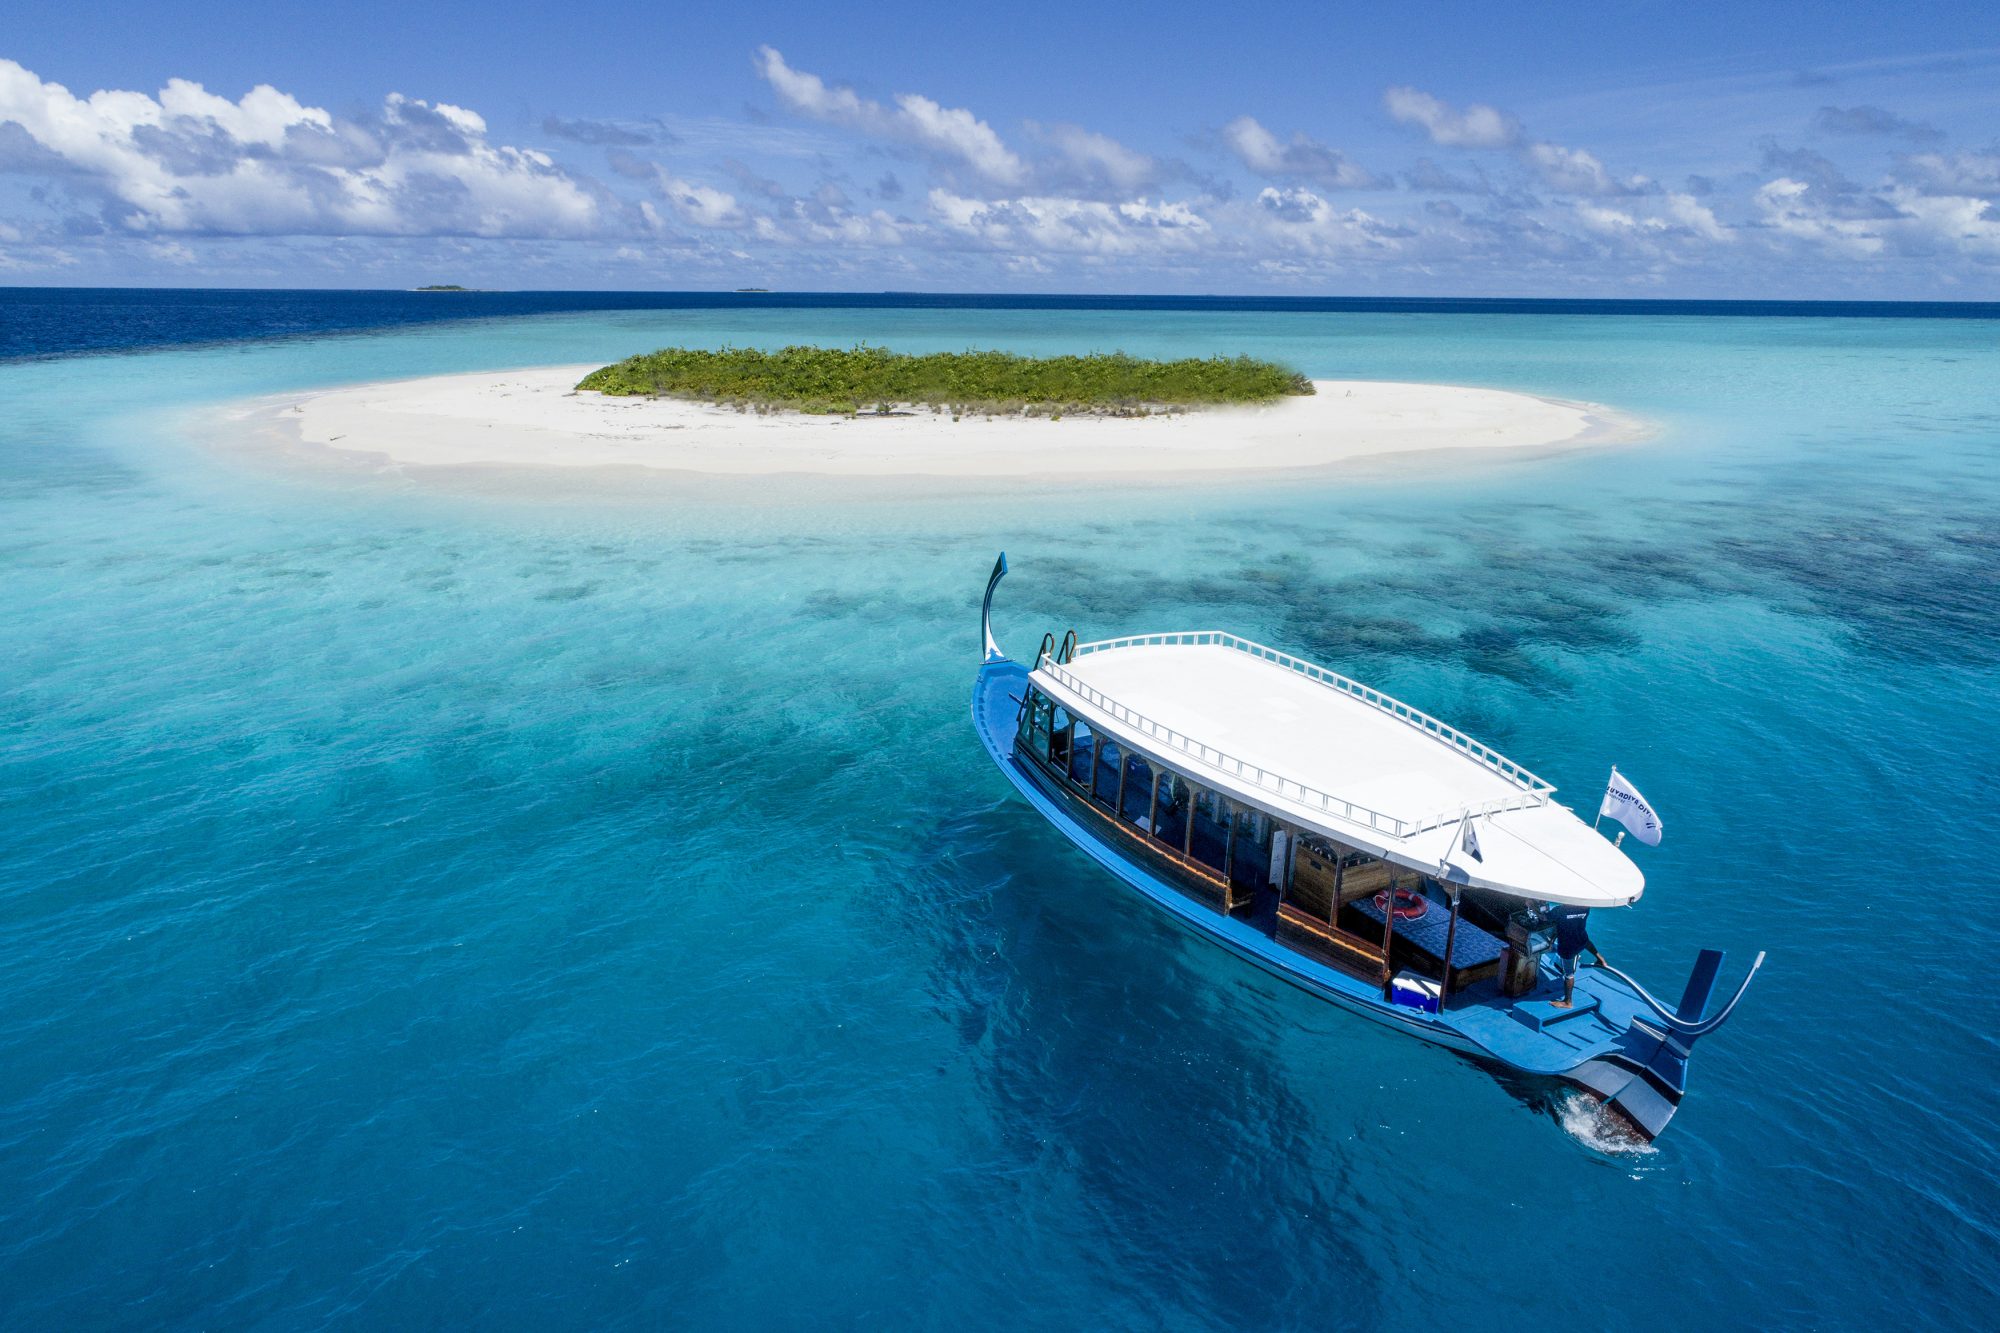 Suvadiva Divers - Mercure Maldives Koodoo